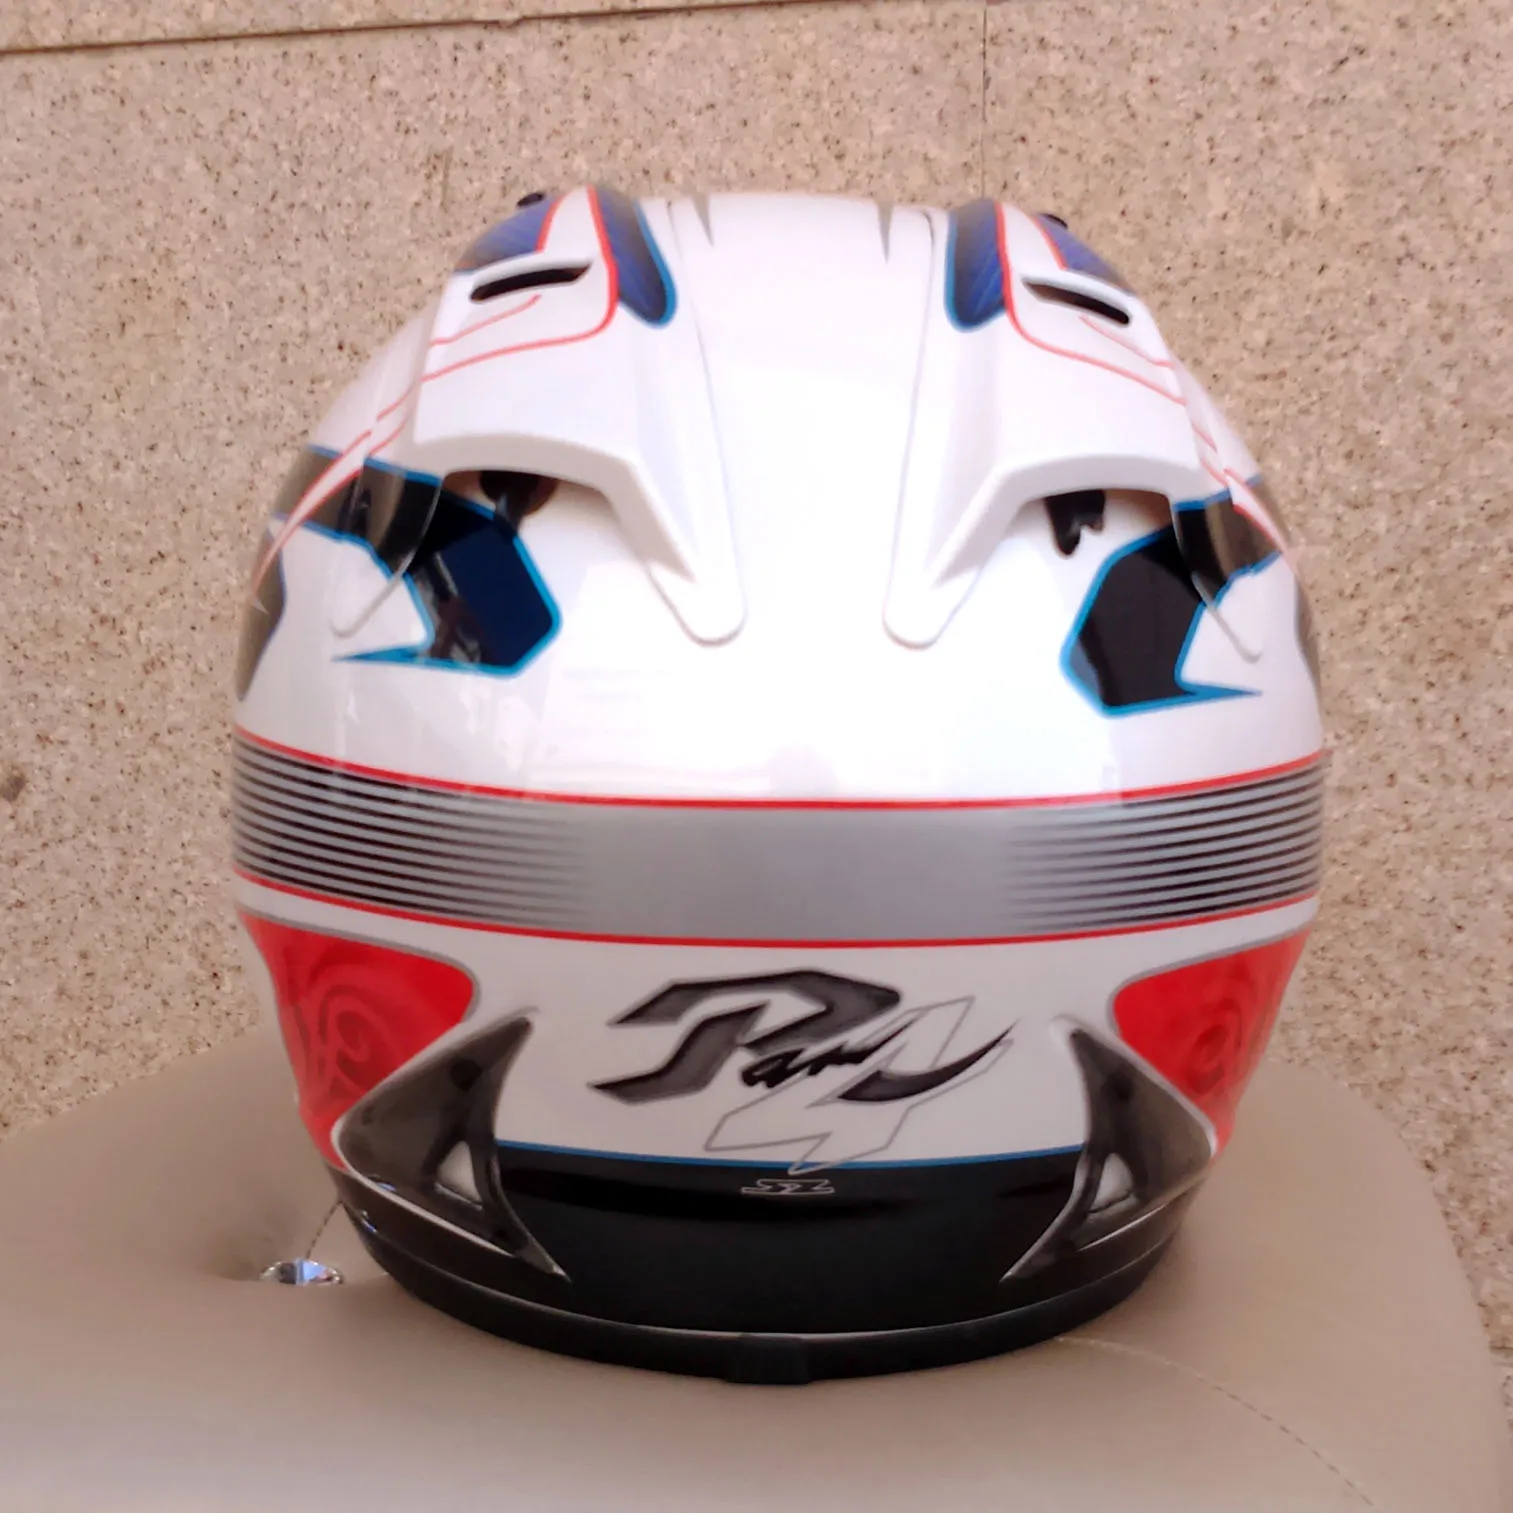 Arai helmet Rx7-Топ Японии RR5 pedro moto rcycle шлем гоночный шлем полное лицо capacete moto rcycle, Capacete, Мото шлем